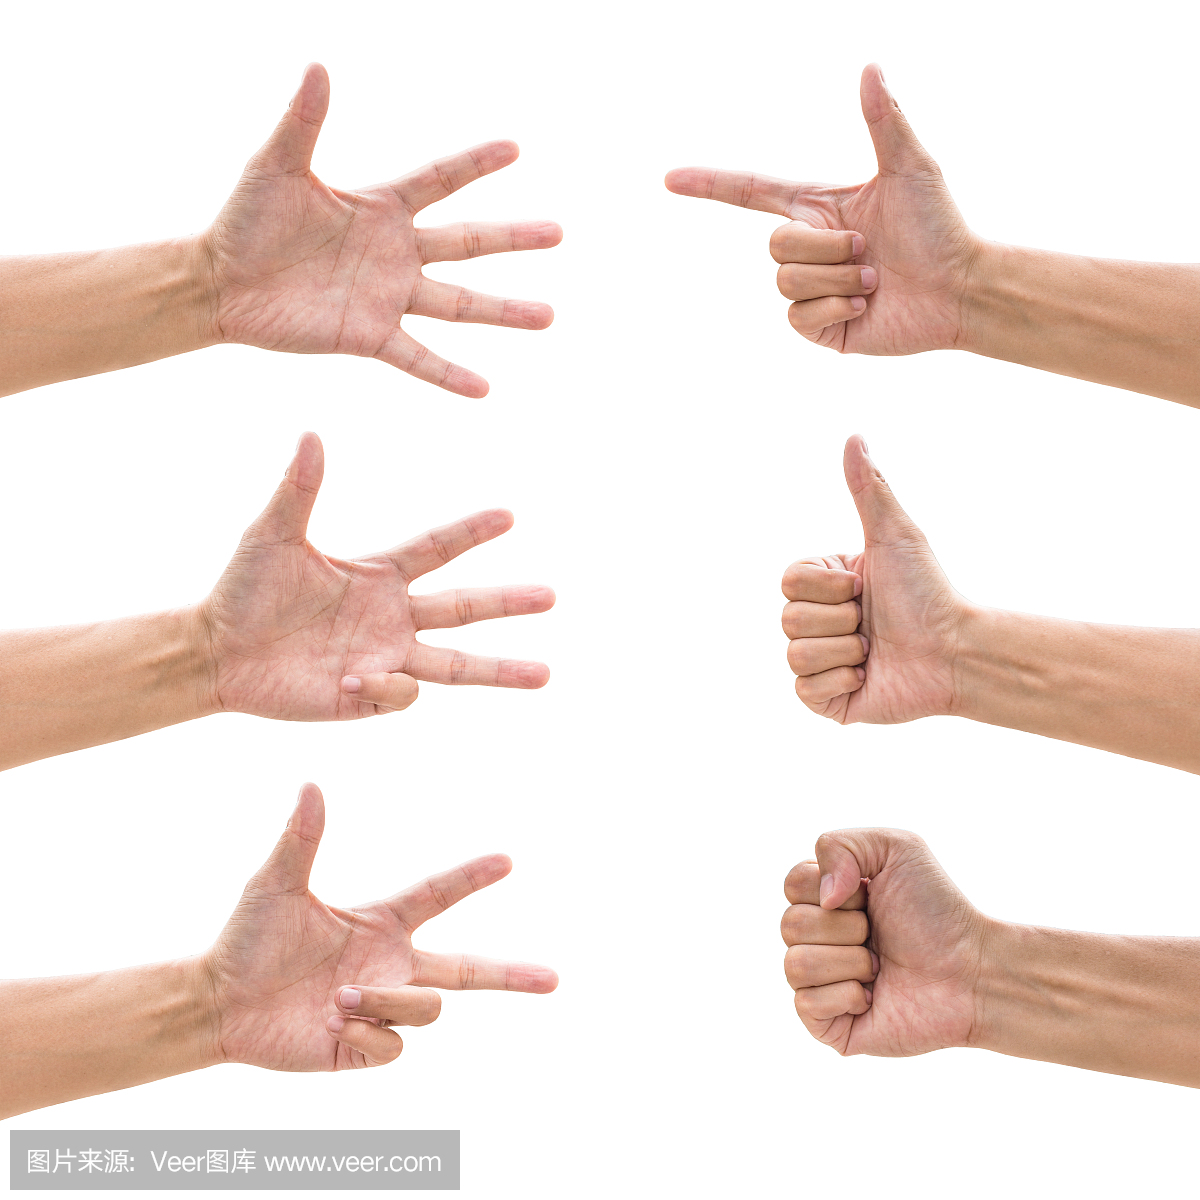 右手掌雄手手势和符号 库存照片. 图片 包括有 看板卡, 男人, 拳头, 图标, 读秒, 少许, 女性 - 217553908